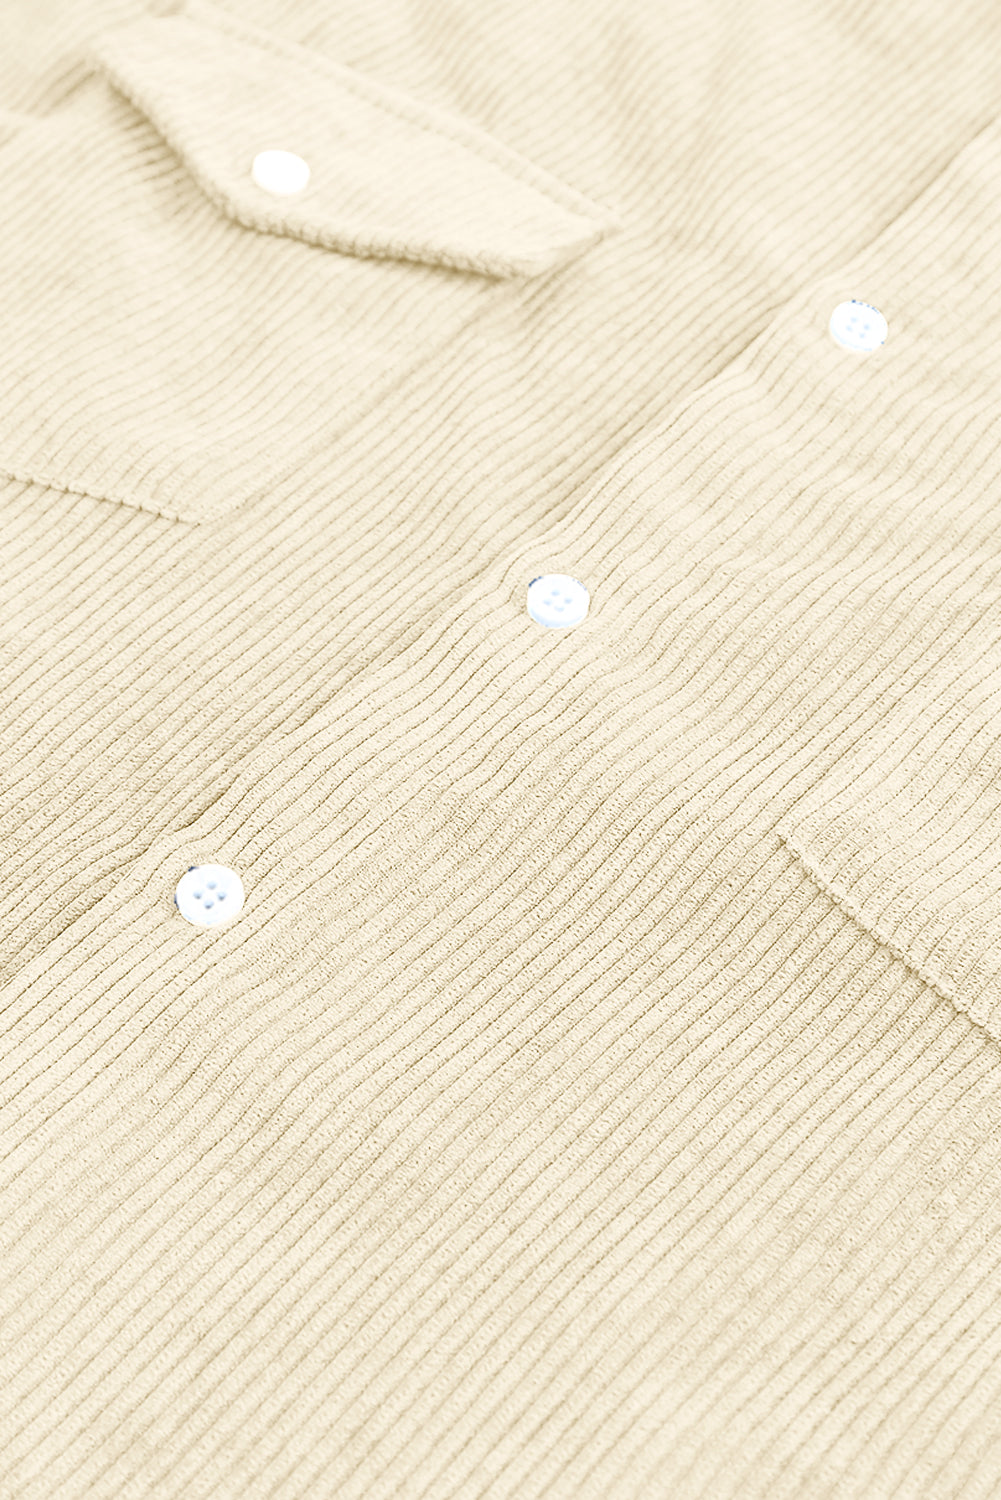 Apricot Men Corduroy Flap Pocket Button Front Shirt Men's Tops JT's Designer Fashion